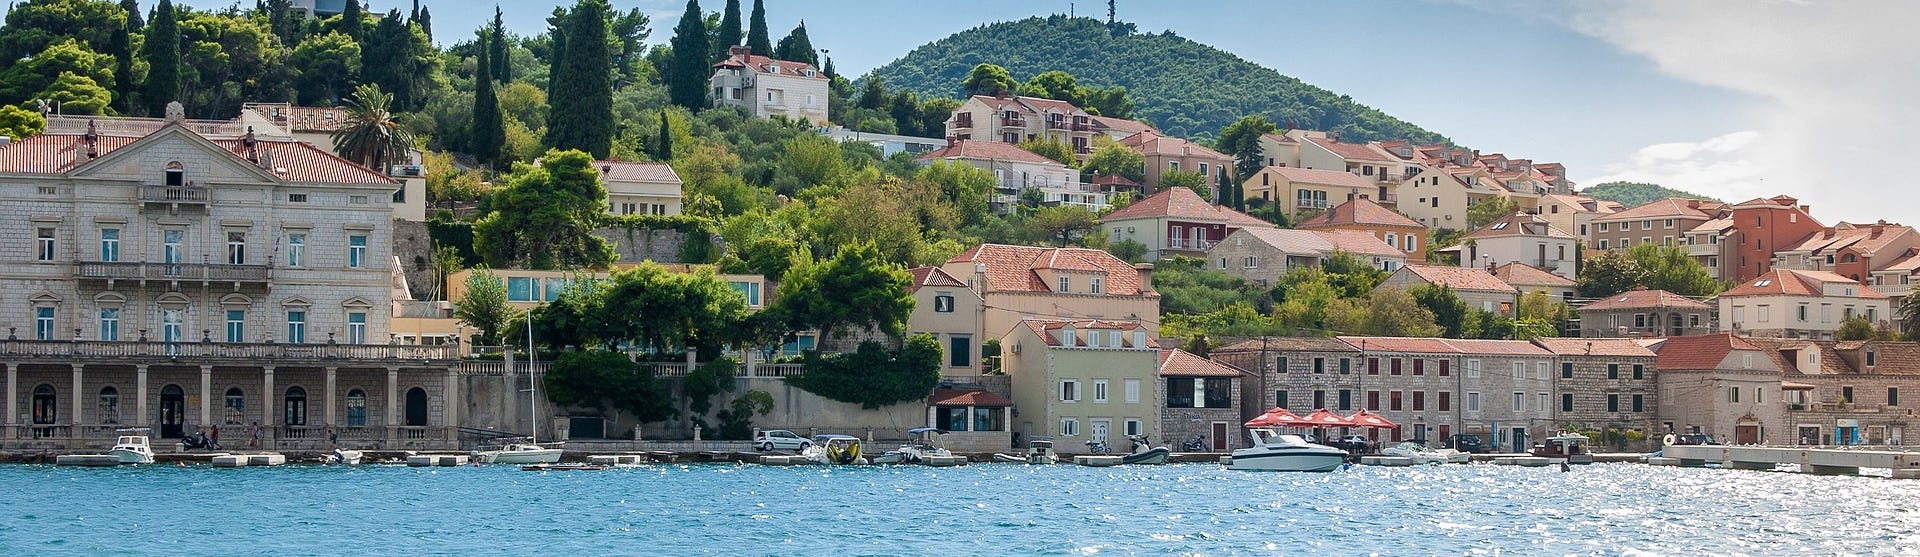 Dubrovnik i Kroatien med ljusblått vatten och färgglada byggnader.